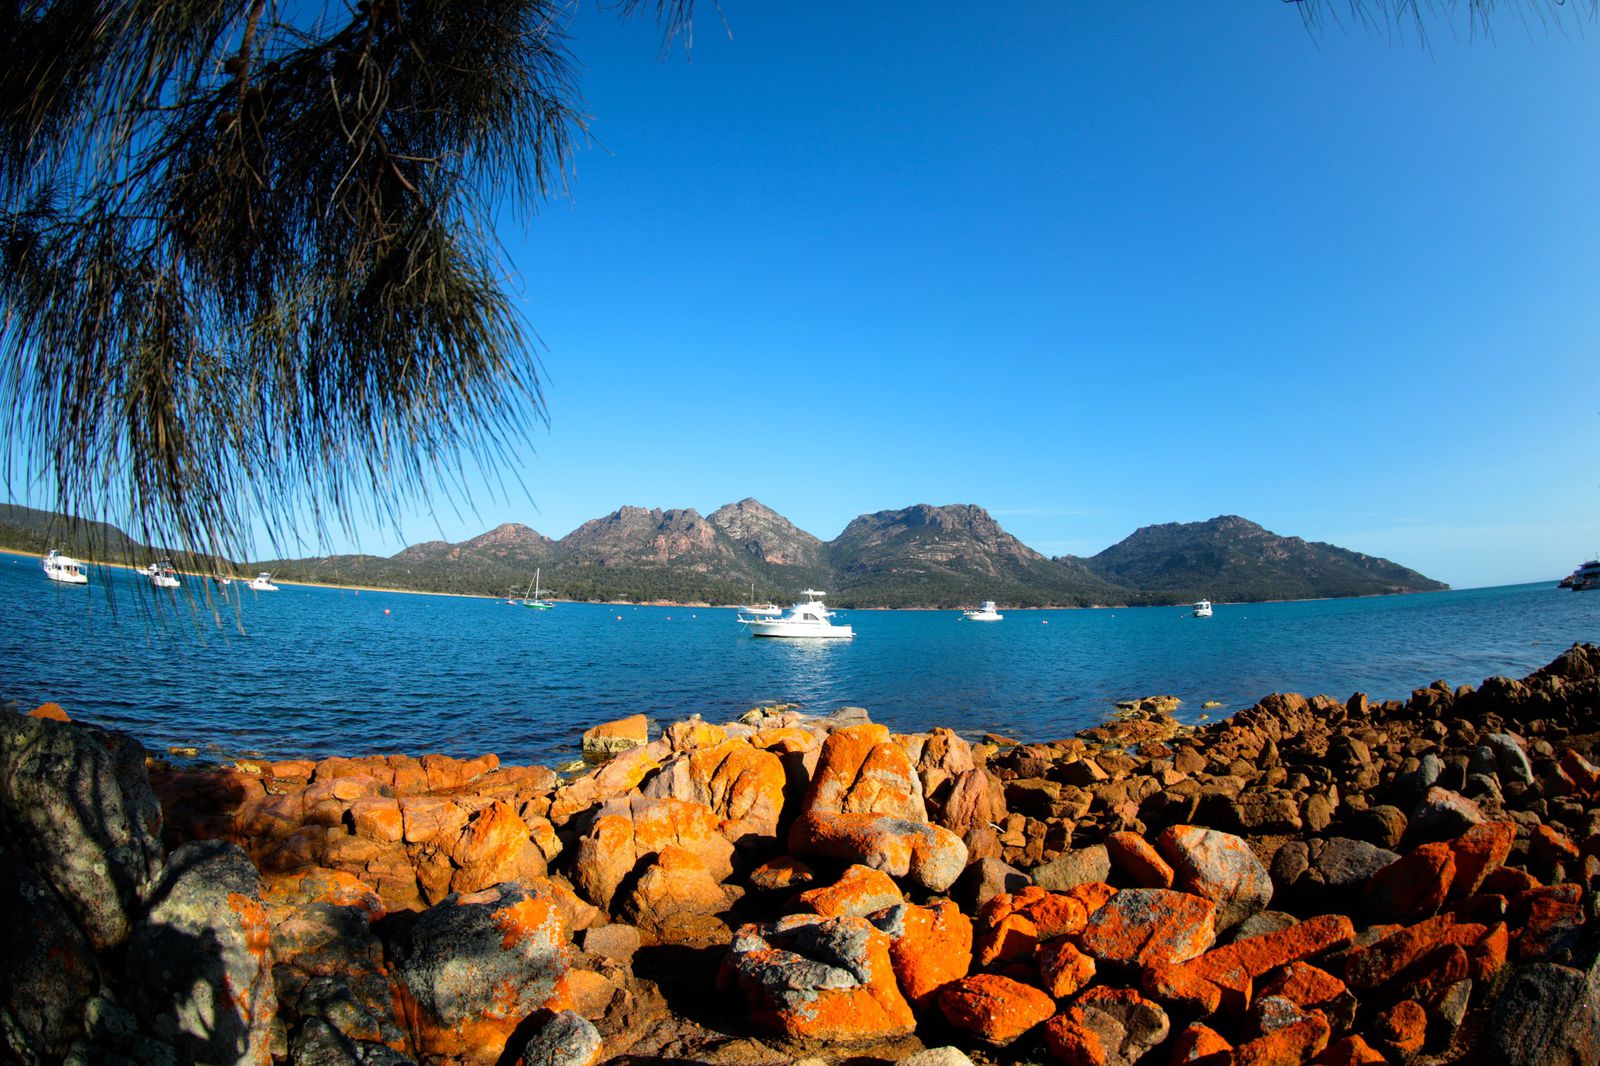 世界で最もピュア クリーンな島 オーストラリア南東部 タスマニア島のおすすめ観光スポット15選 Retrip リトリップ